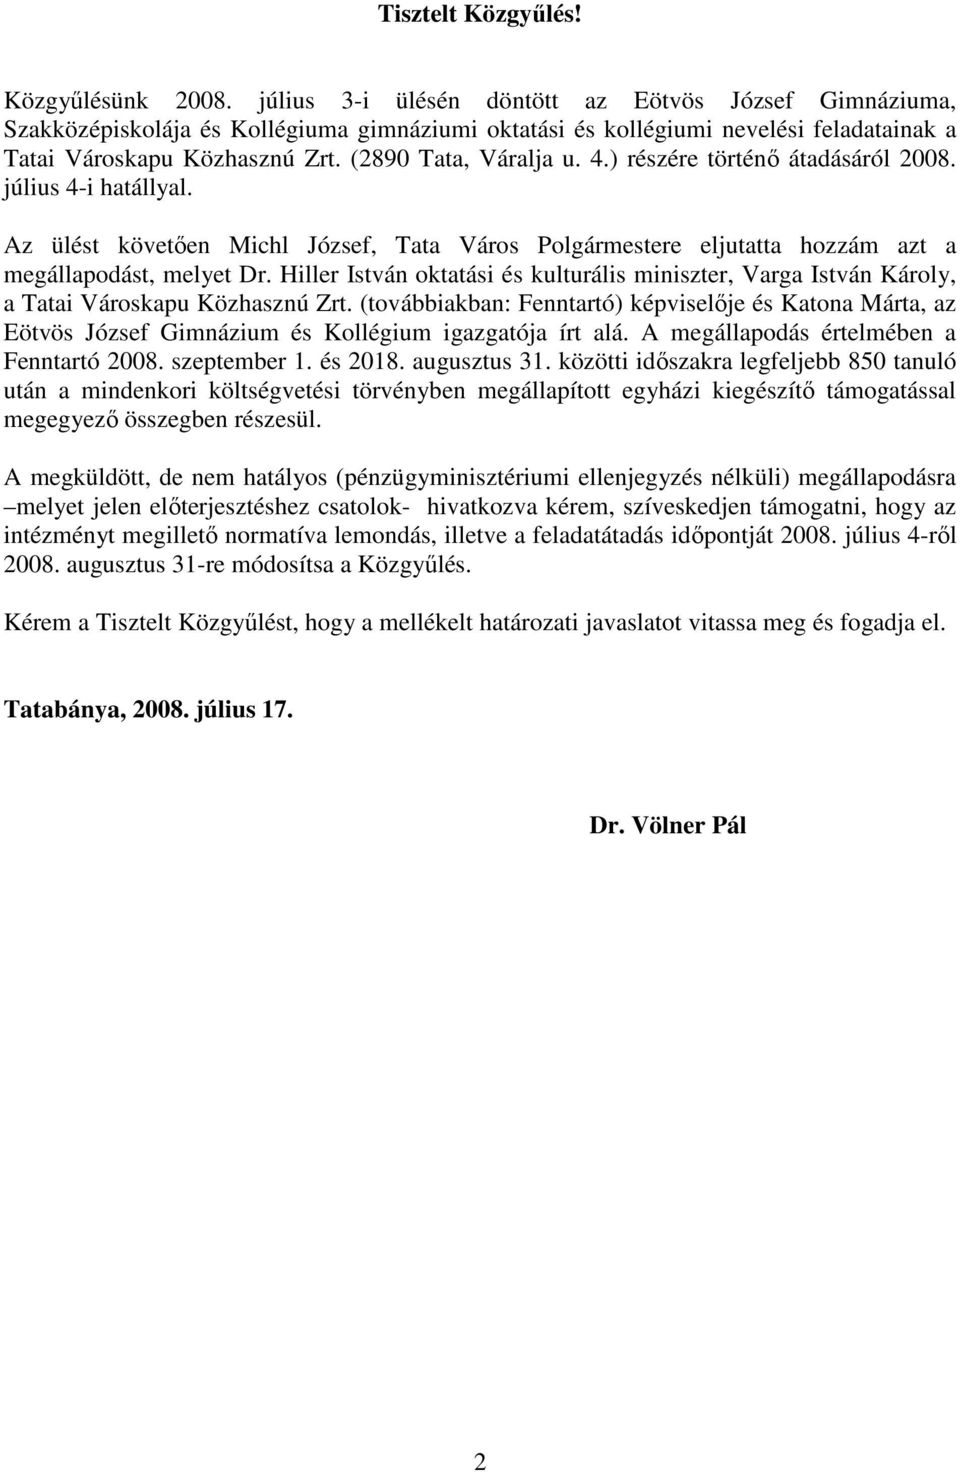 4.) részére történı átadásáról 2008. július 4-i hatállyal. Az ülést követıen Michl József, Tata Város Polgármestere eljutatta hozzám azt a megállapodást, melyet Dr.